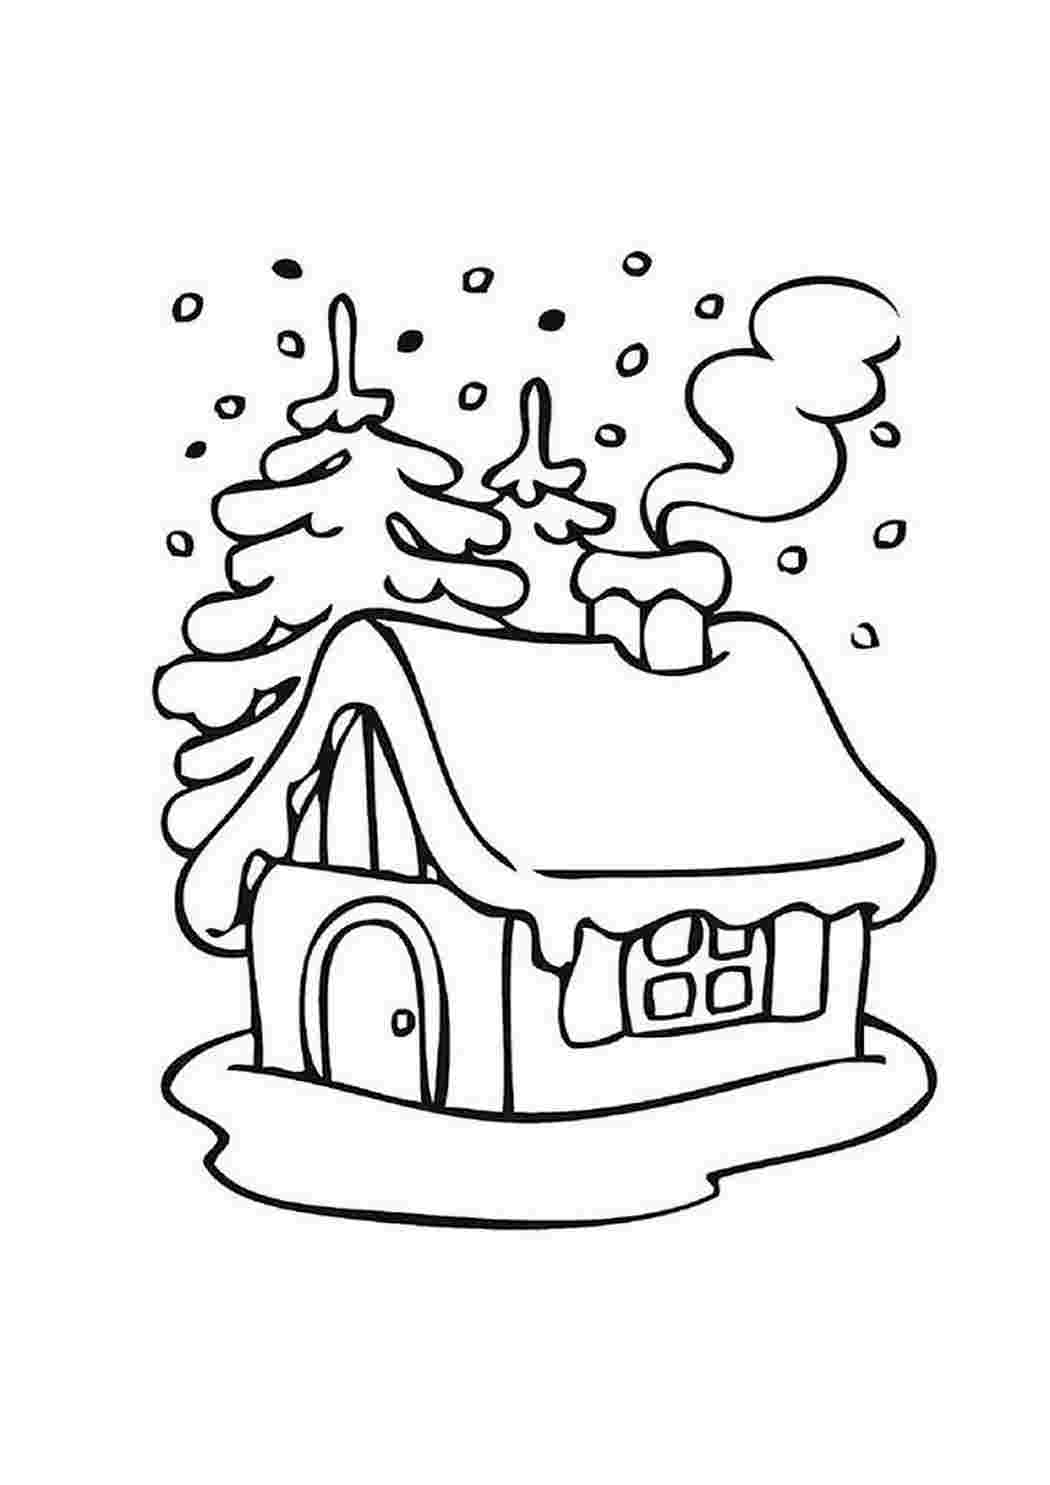 Раскраски Зимний домик и елки. Раскраска. Зимний домик и елки. Скачать раскраски.